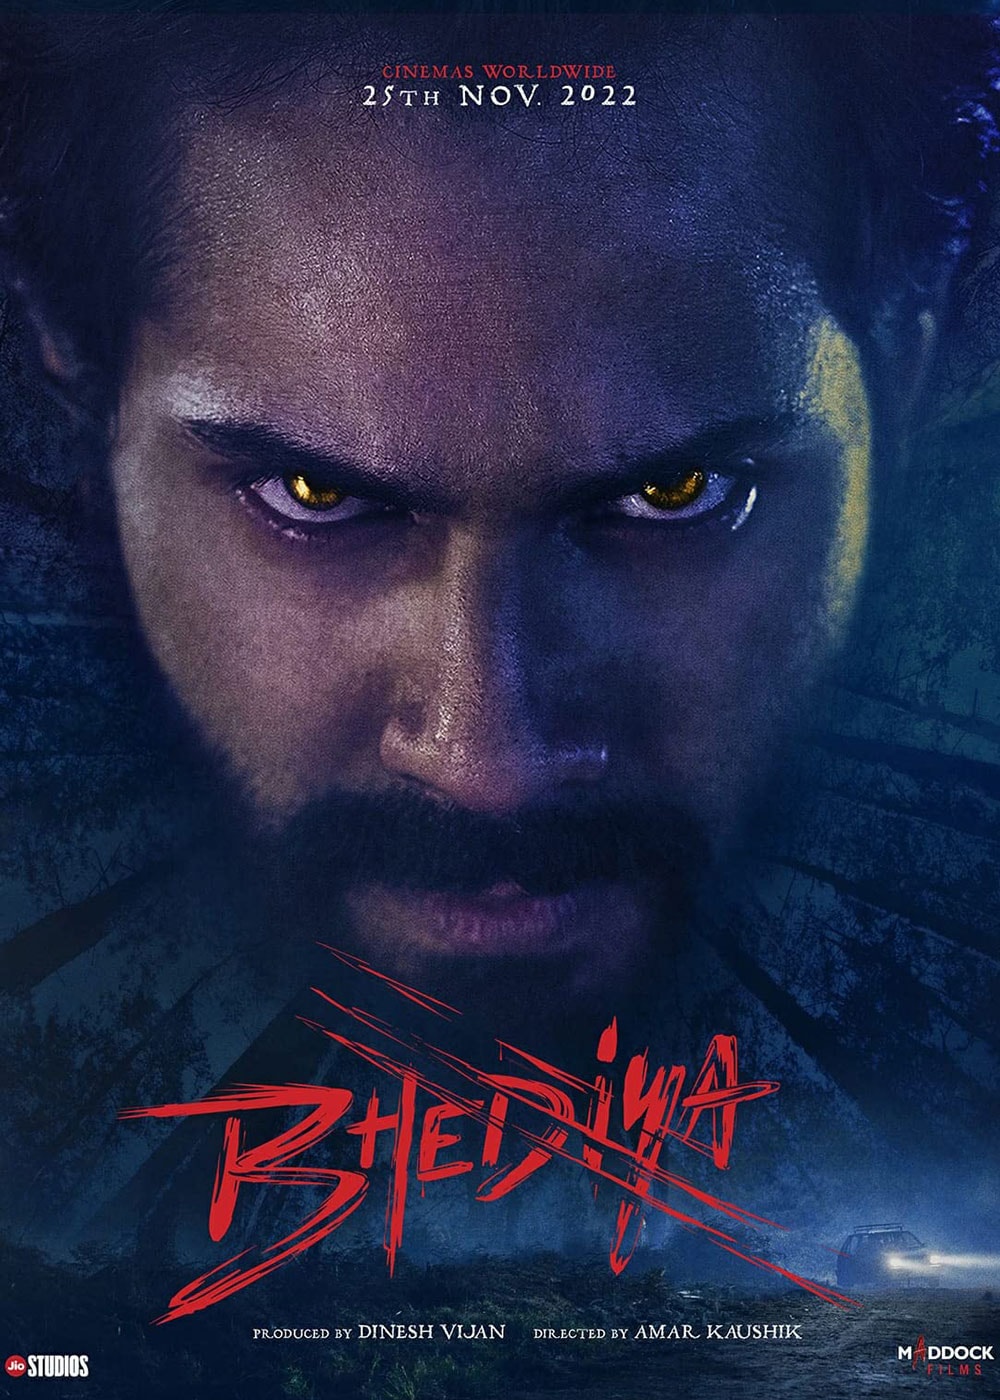 movie review of bhediya